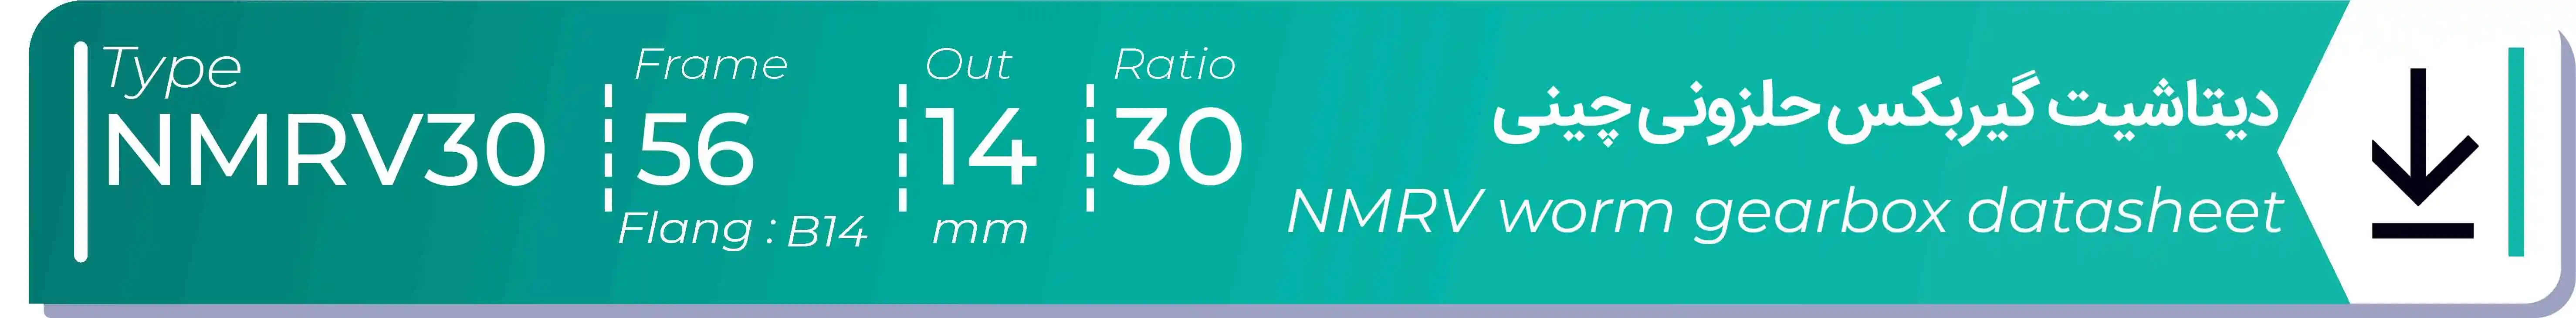  دیتاشیت و مشخصات فنی گیربکس حلزونی چینی   NMRV30  -  با خروجی 14- میلی متر و نسبت30